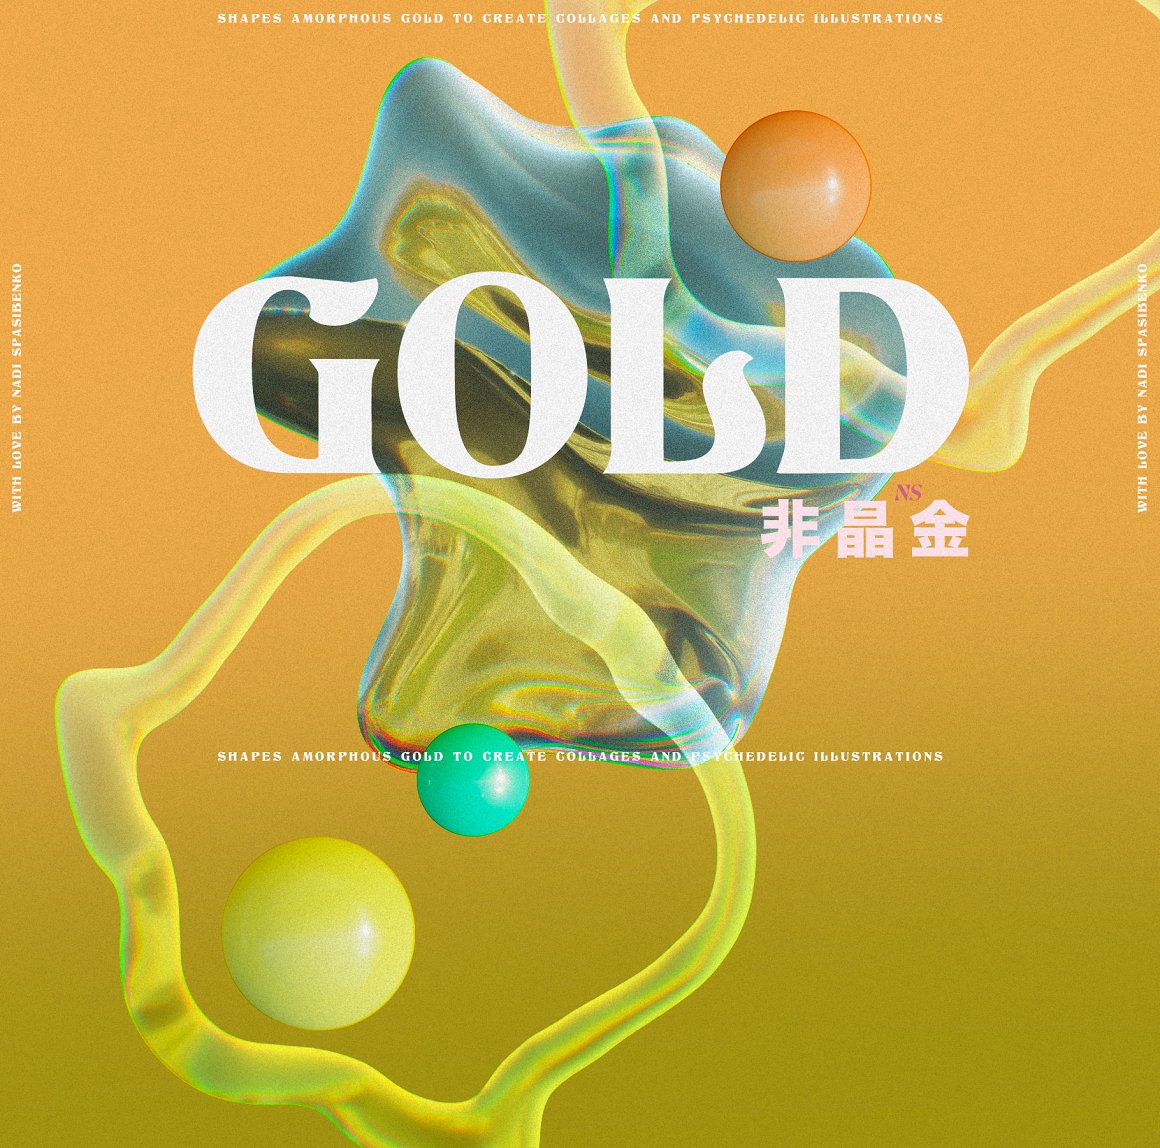 抽象艺术酸性液态3d迷幻黄金形状背景海报PBG素材包 Amorphous Liquid Gold 图片素材 第14张